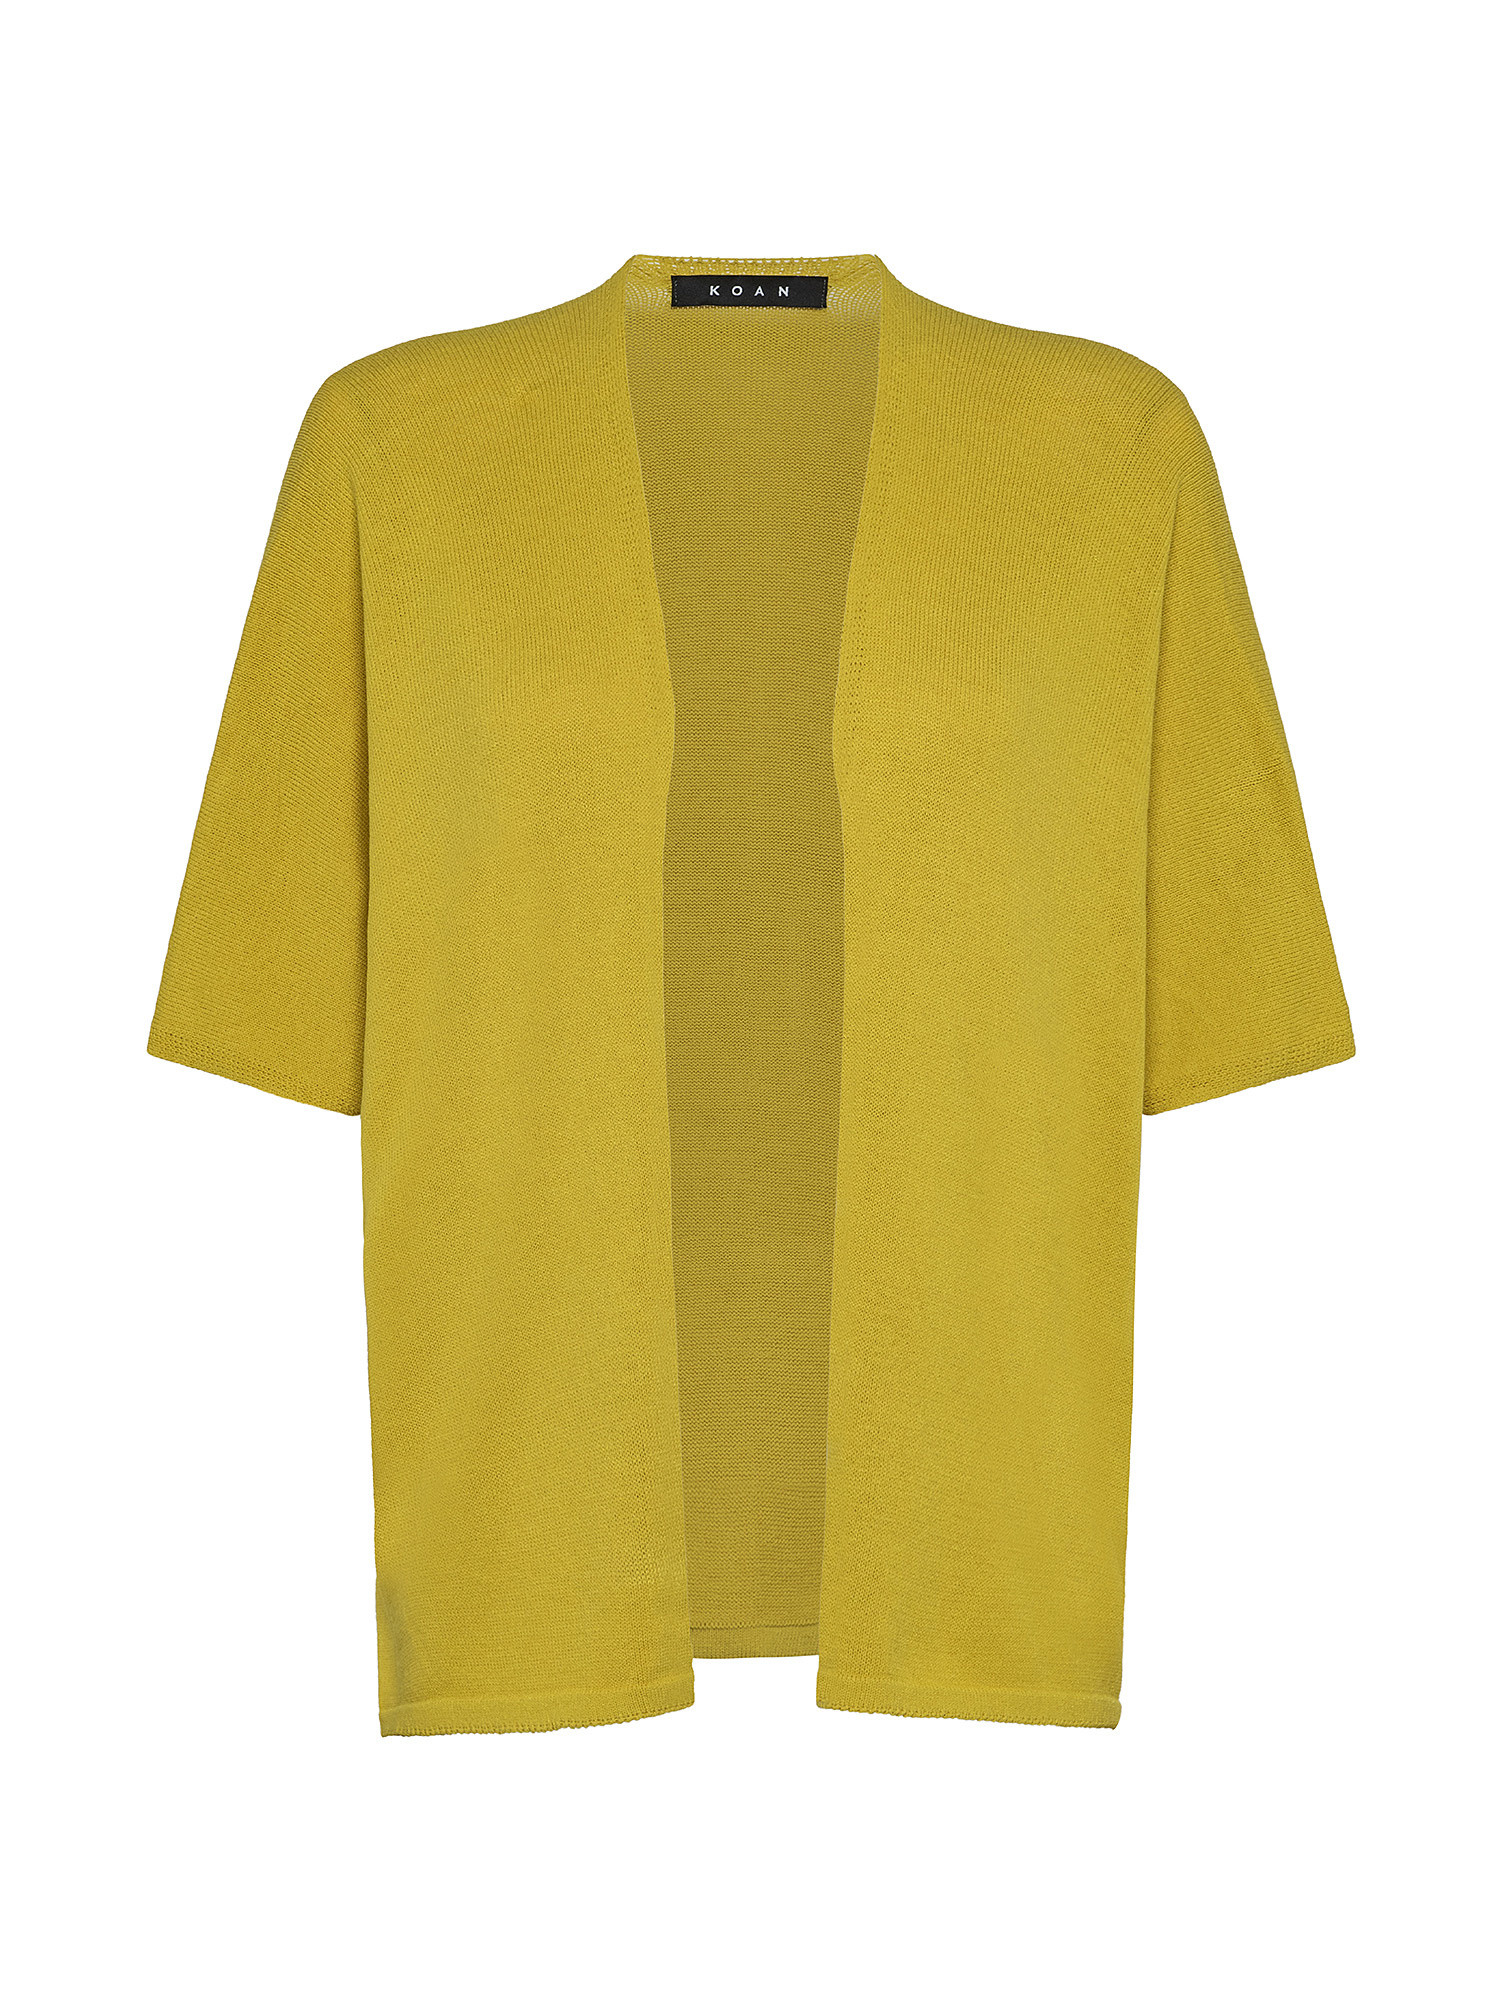 Cardigan, Mustard Yellow, large image number 0